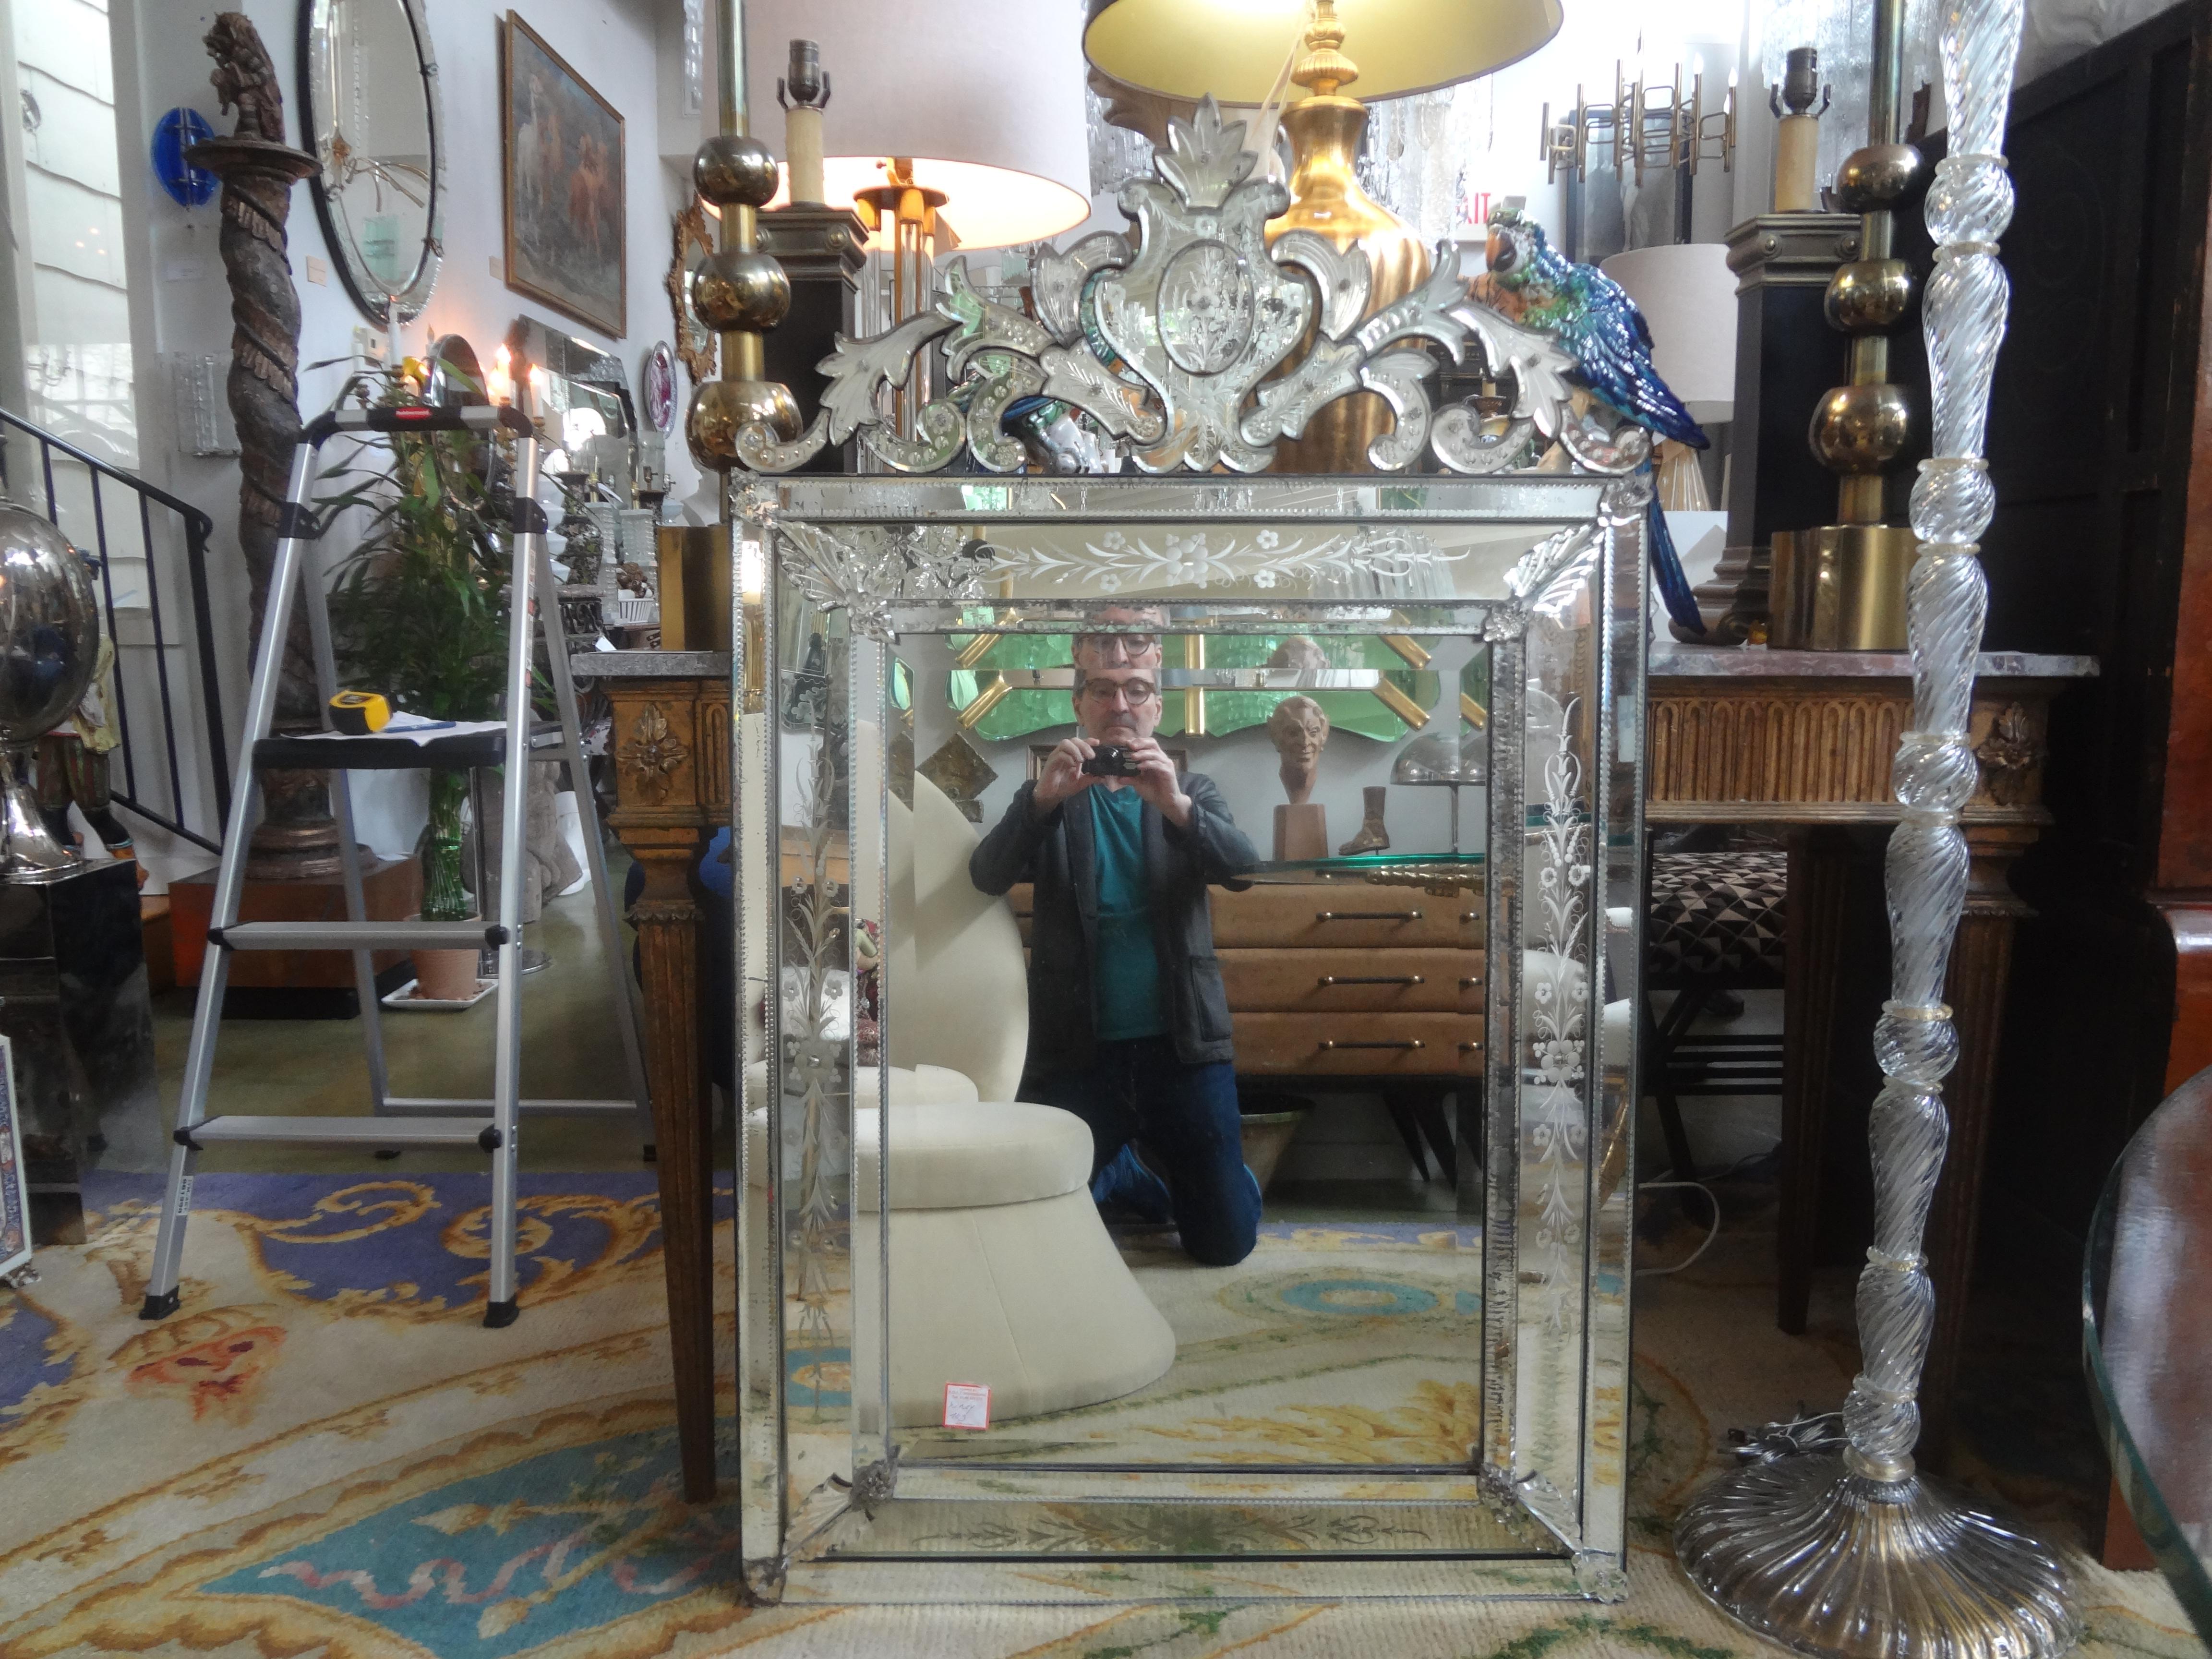 Großer antiker geätzter und abgeschrägter venezianischer Spiegel
Wunderschöner geätzter und abgeschrägter rechteckiger venezianischer Spiegel im Barockstil. Dieser große antike venezianische Spiegel ist in gutem Zustand mit einigen natürlich